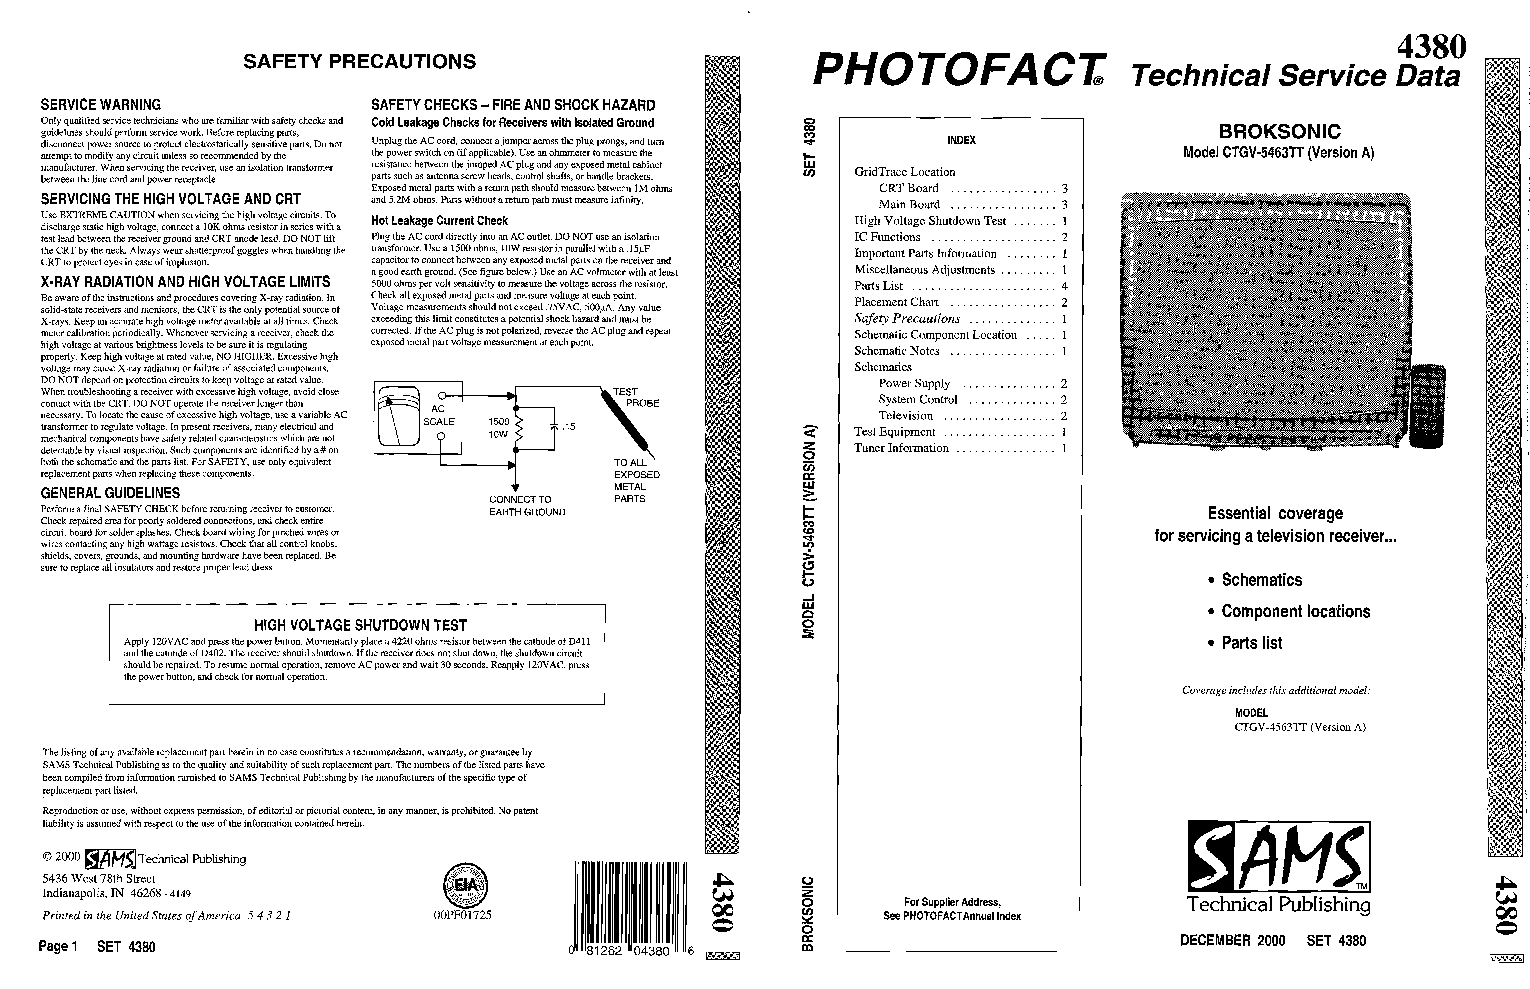 Broksonic Fernsehservice Handbuch